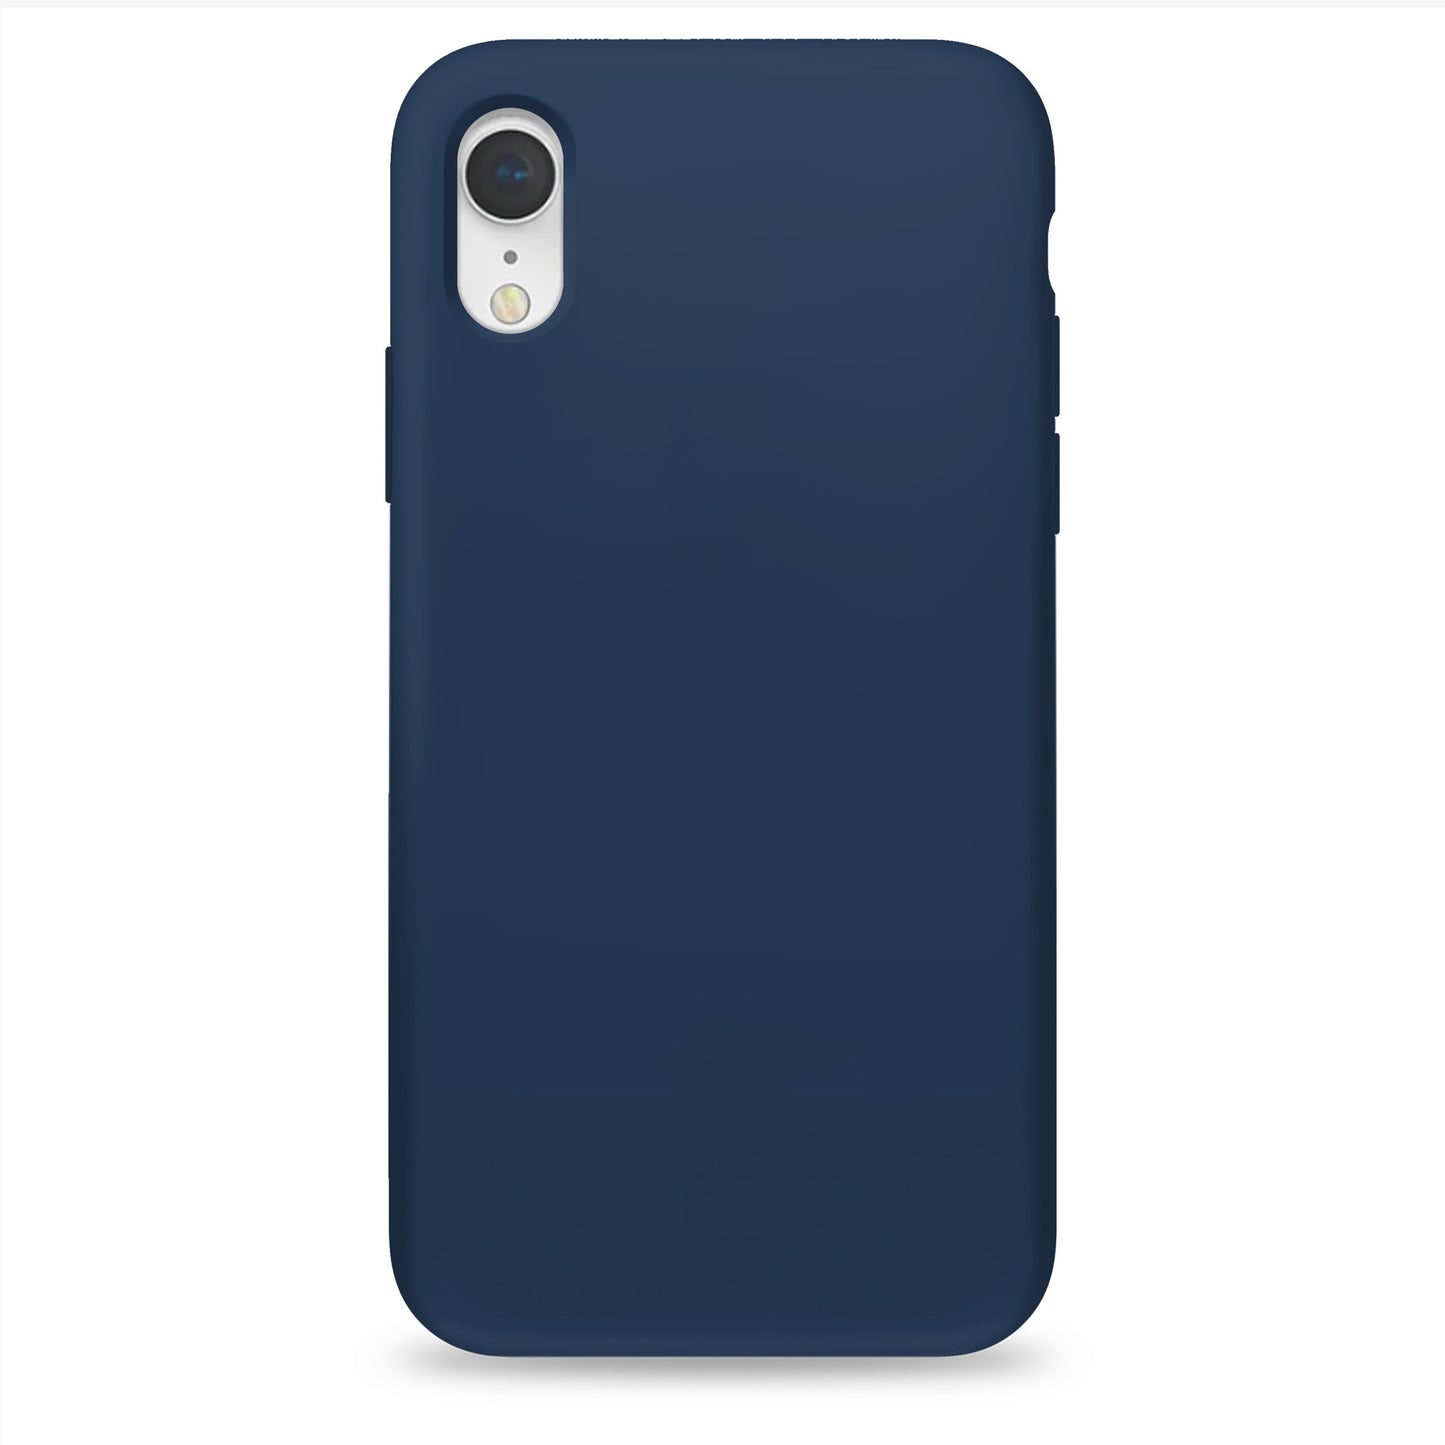 Coque en silicone bleu cobalt pour iPhone